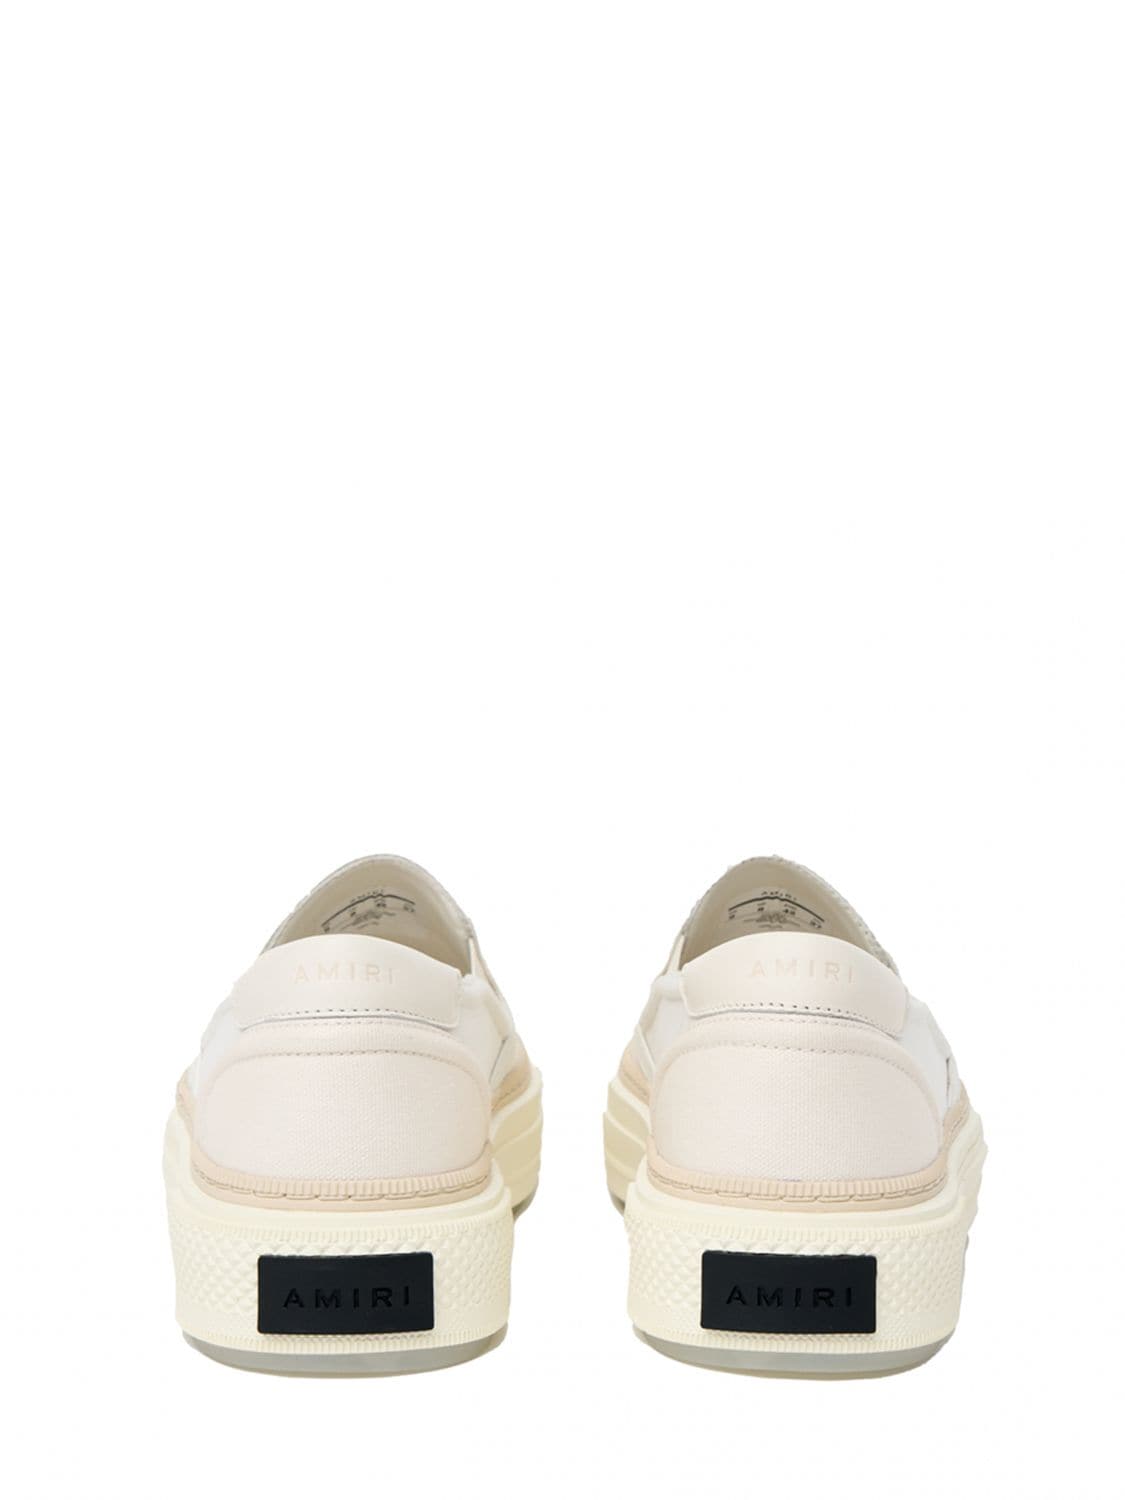 Shop Amiri Skeltop Slip On Sneakers In White